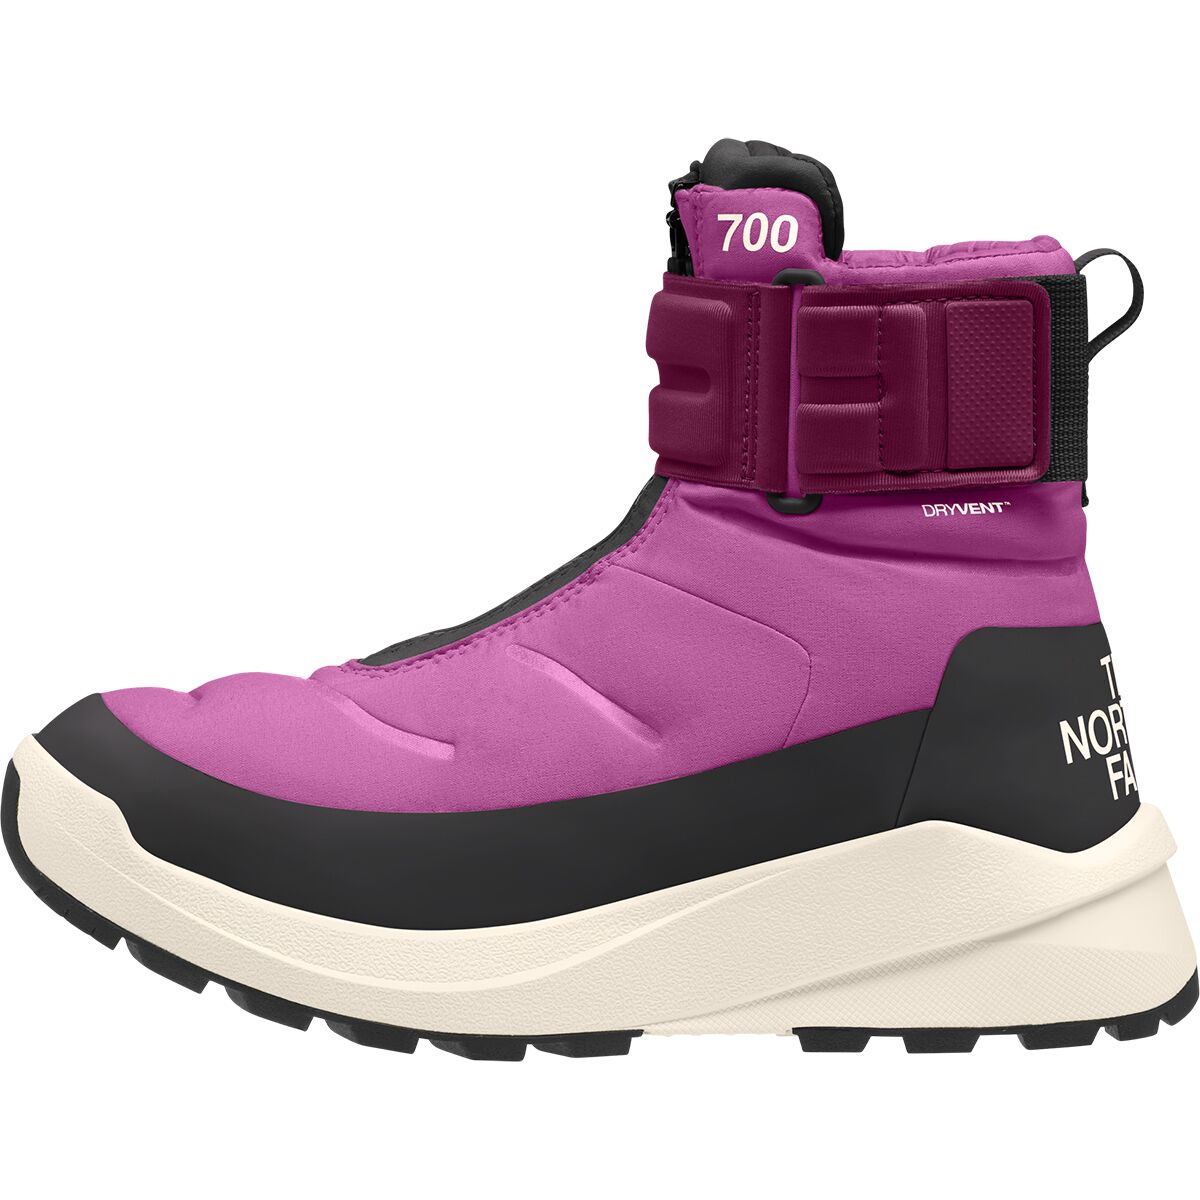 The North Face Nuptse II Strap Waterproof Bootie - Women's - Footwear